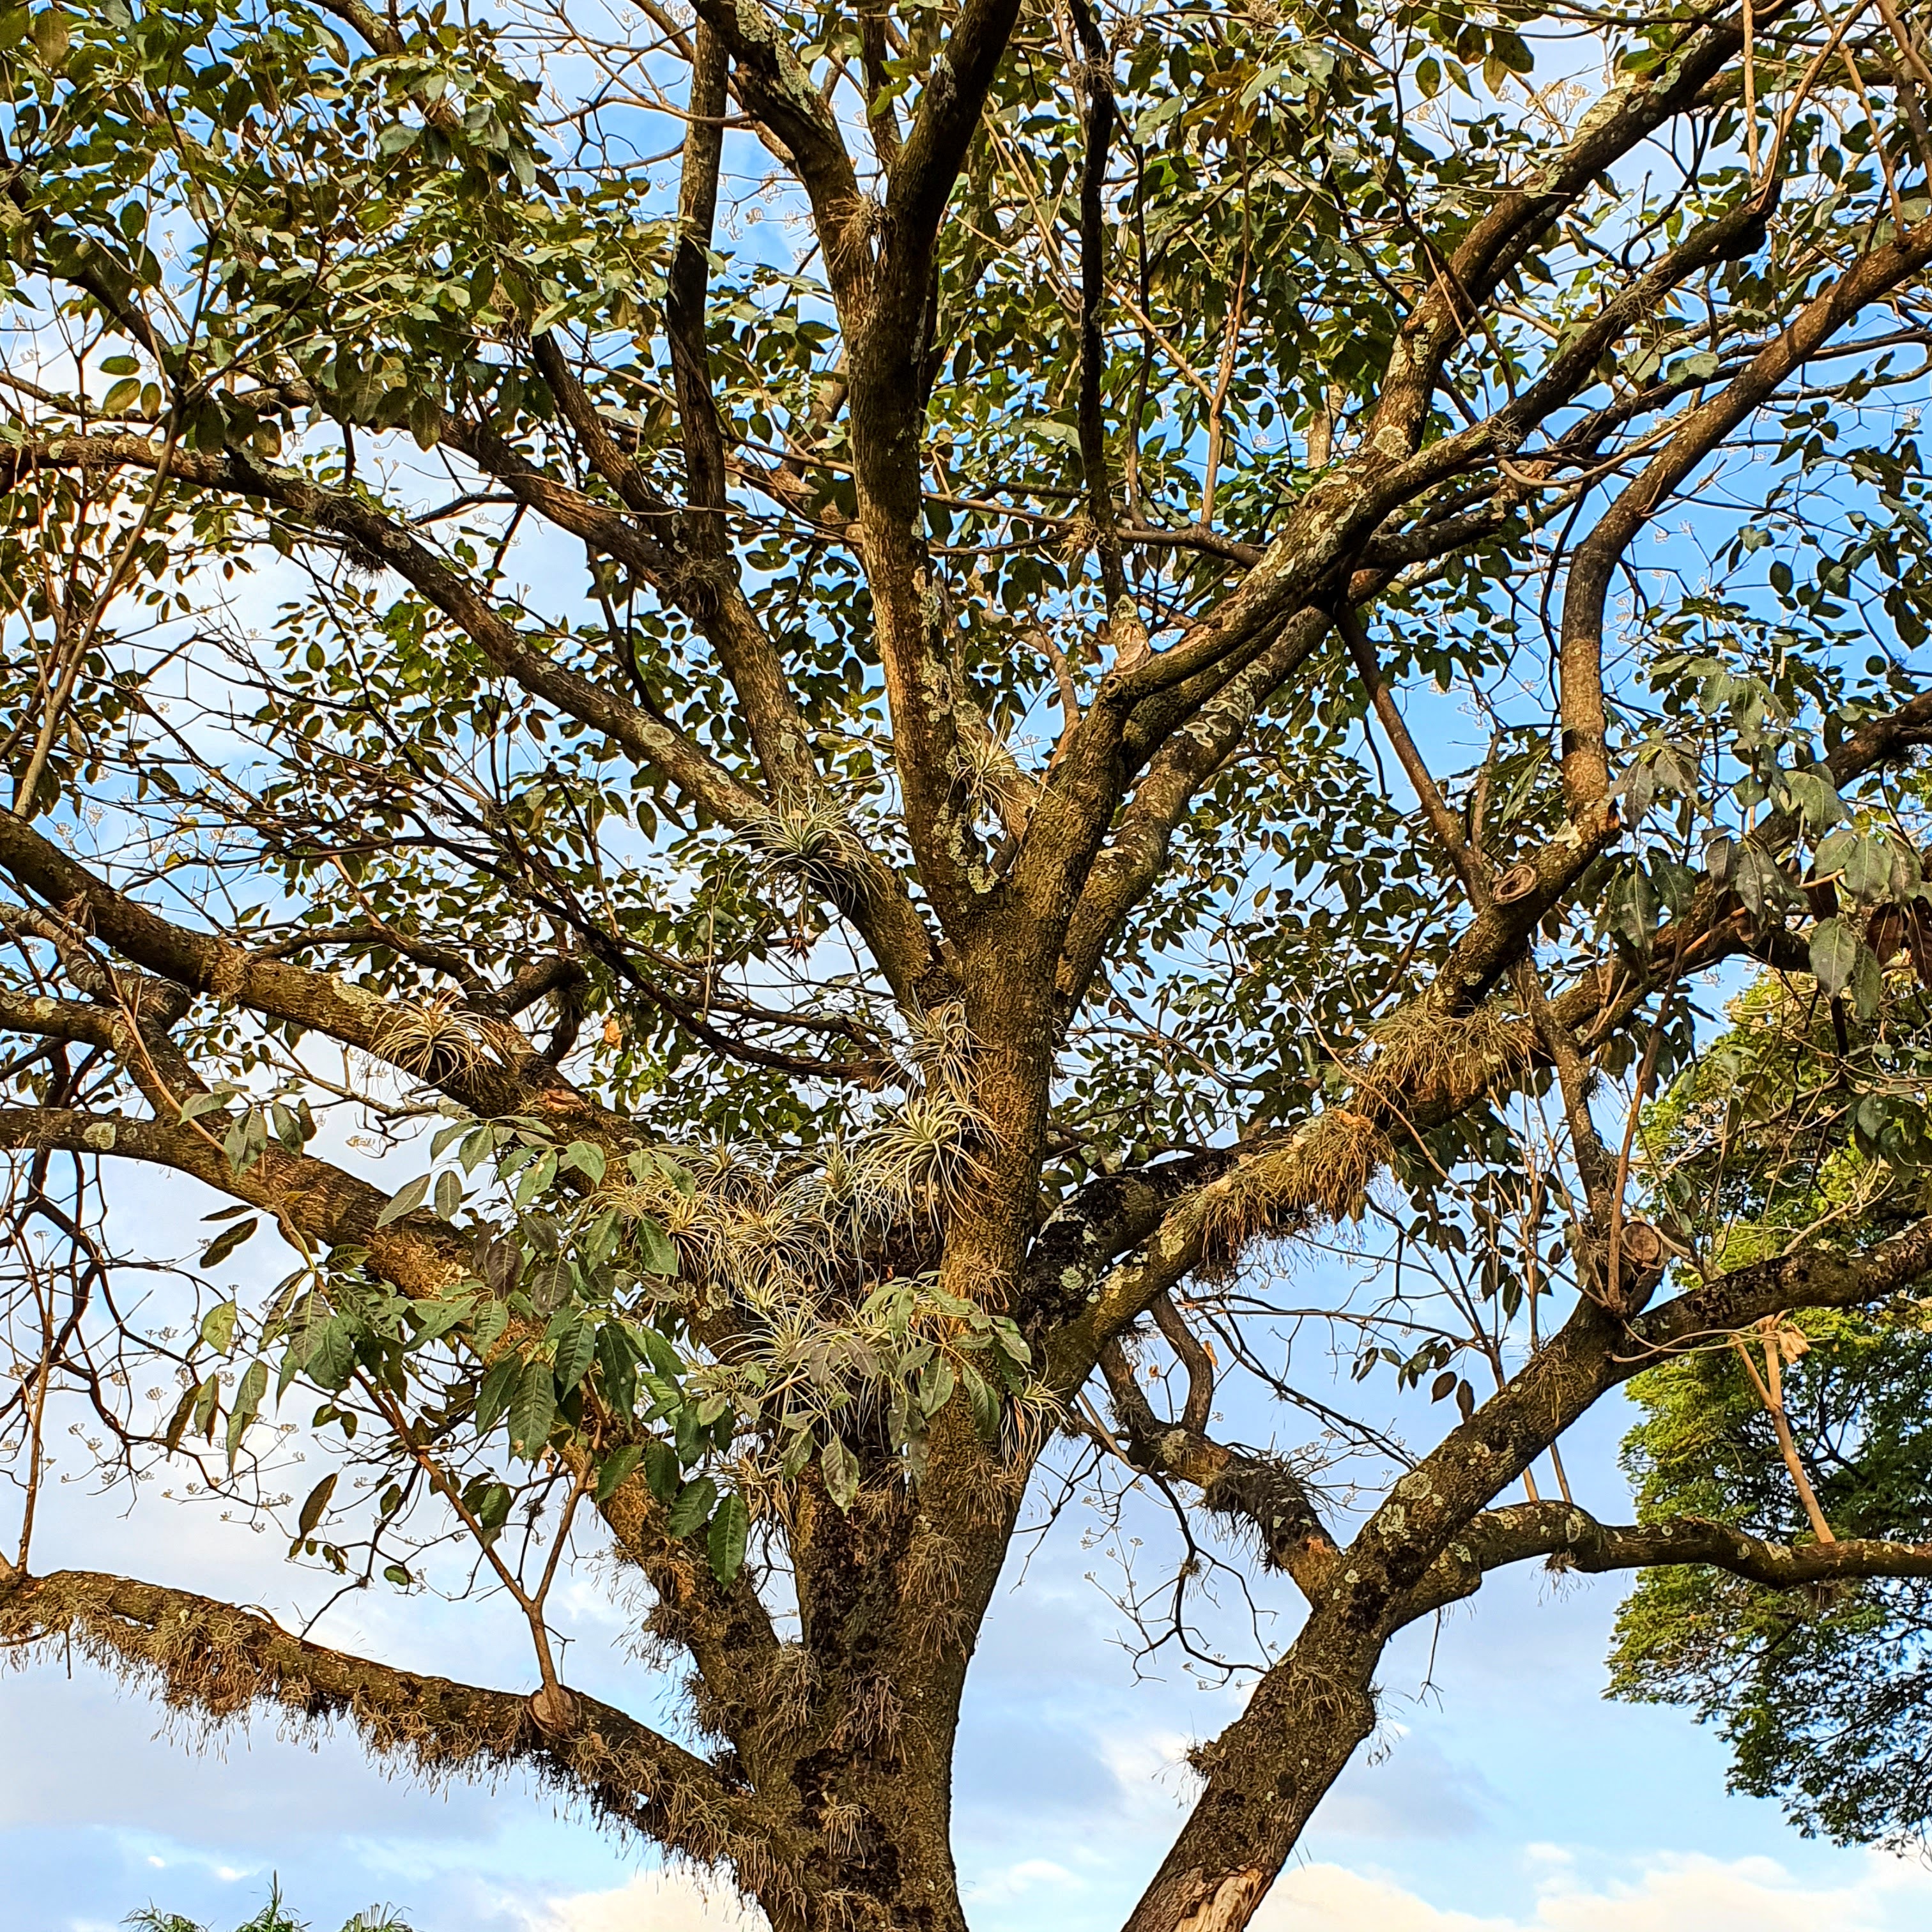 Tilândsias em árvore.